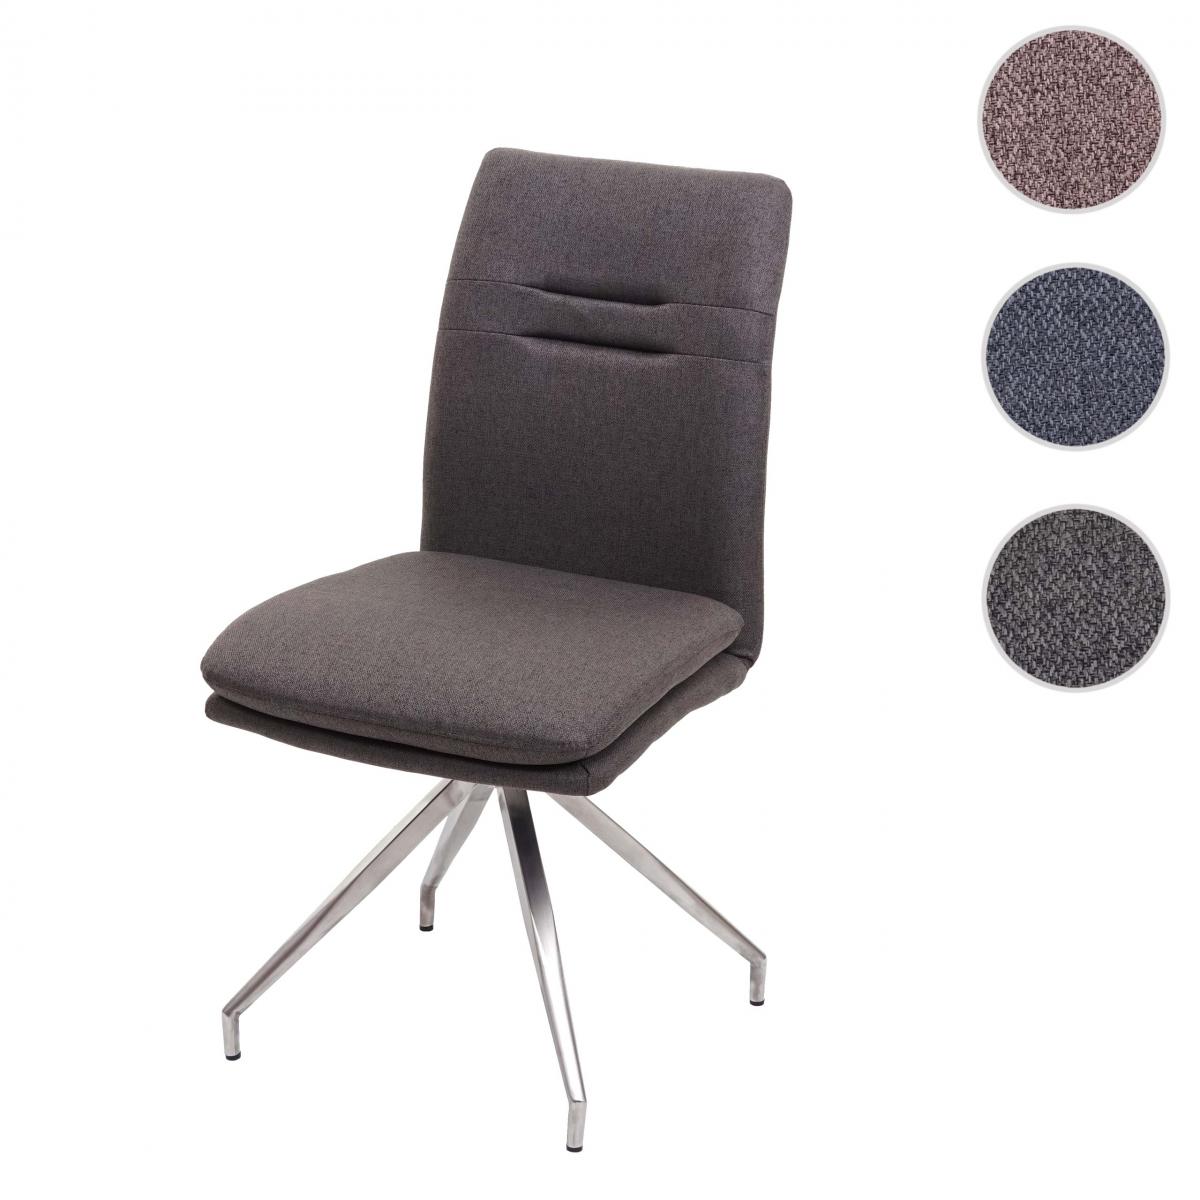 Mendler - Chaise de salle à manger HWC-H70, chaise de cuisine, tissu, acier inoxydable brossé ~ gris-brun - Chaises